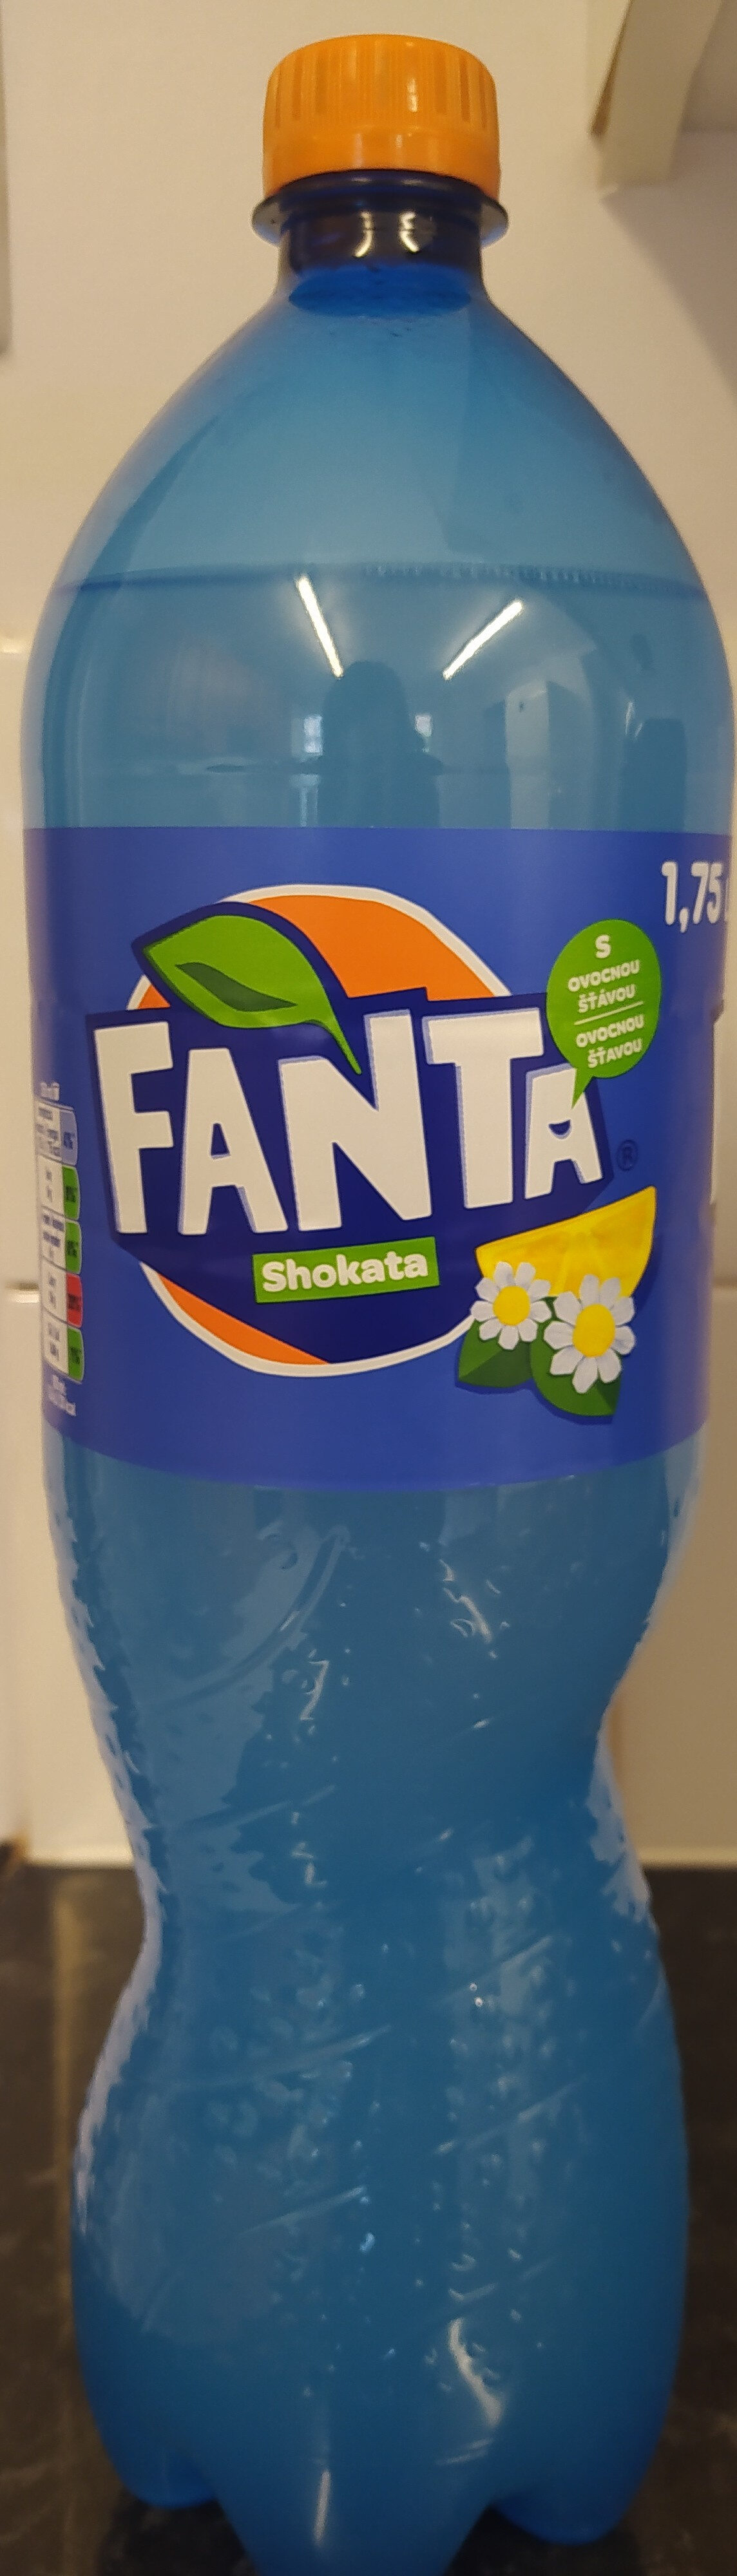 Fanta Shokata - Produit - cs